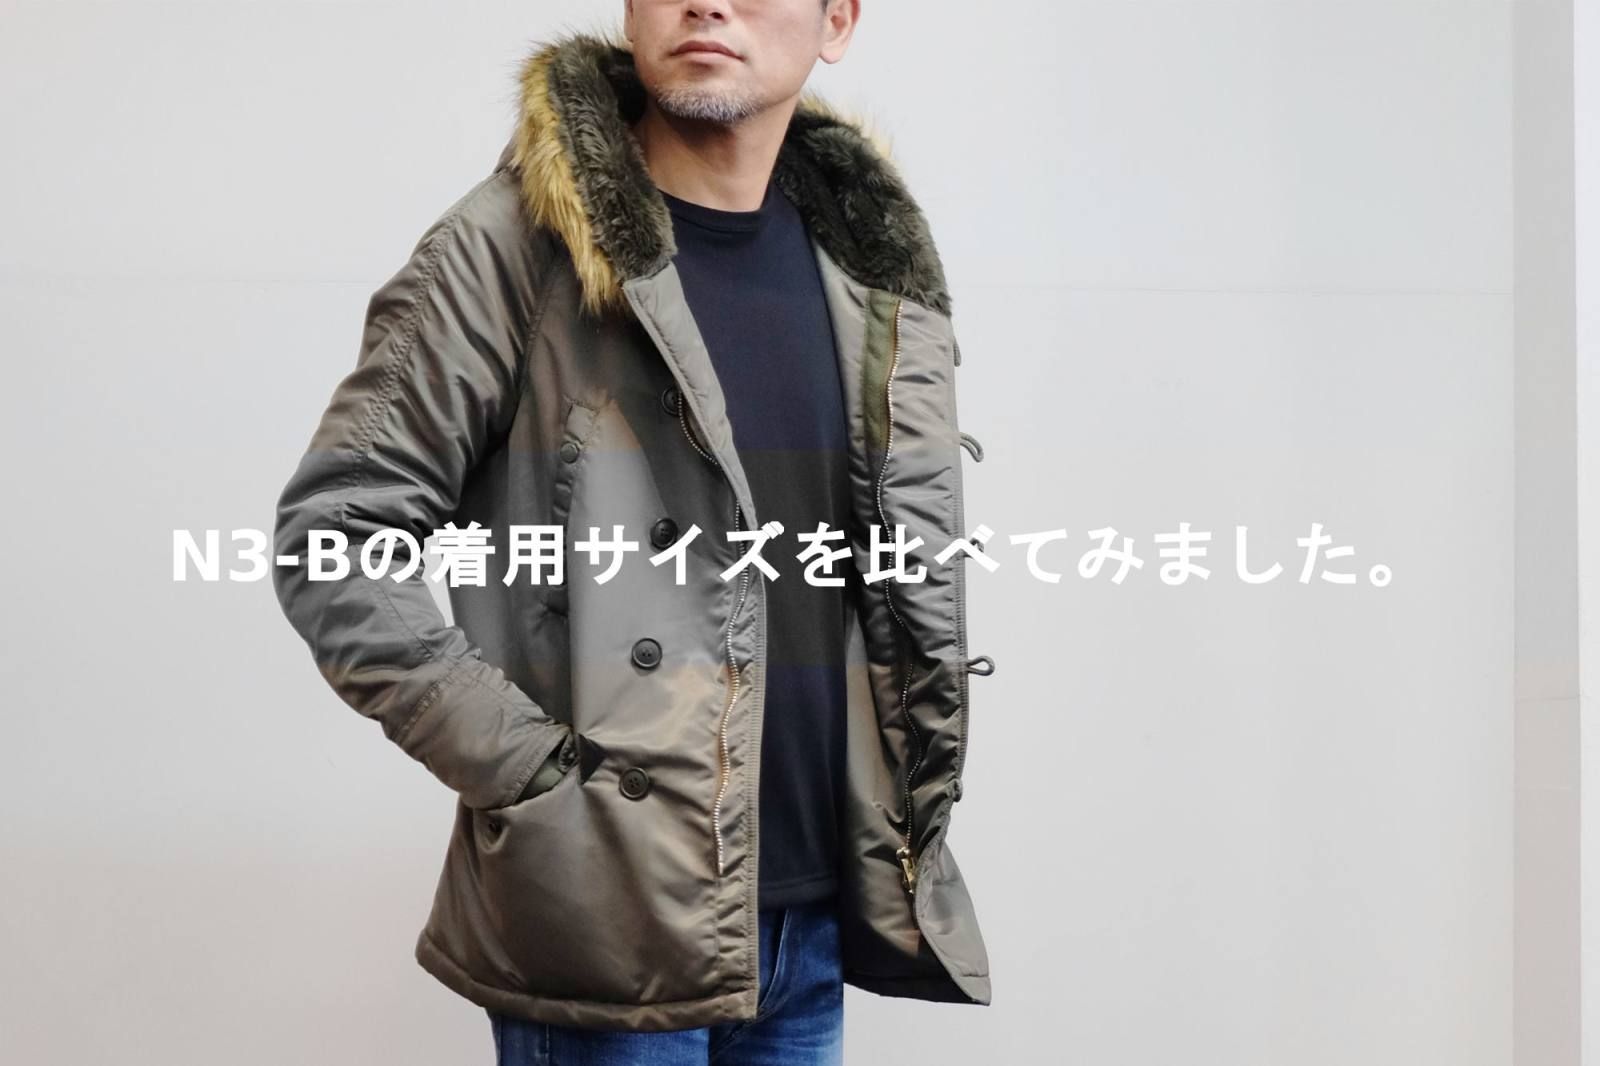 【junhashimoto】 N3-Bの着用サイズをくらべてみました。 | ROSSO